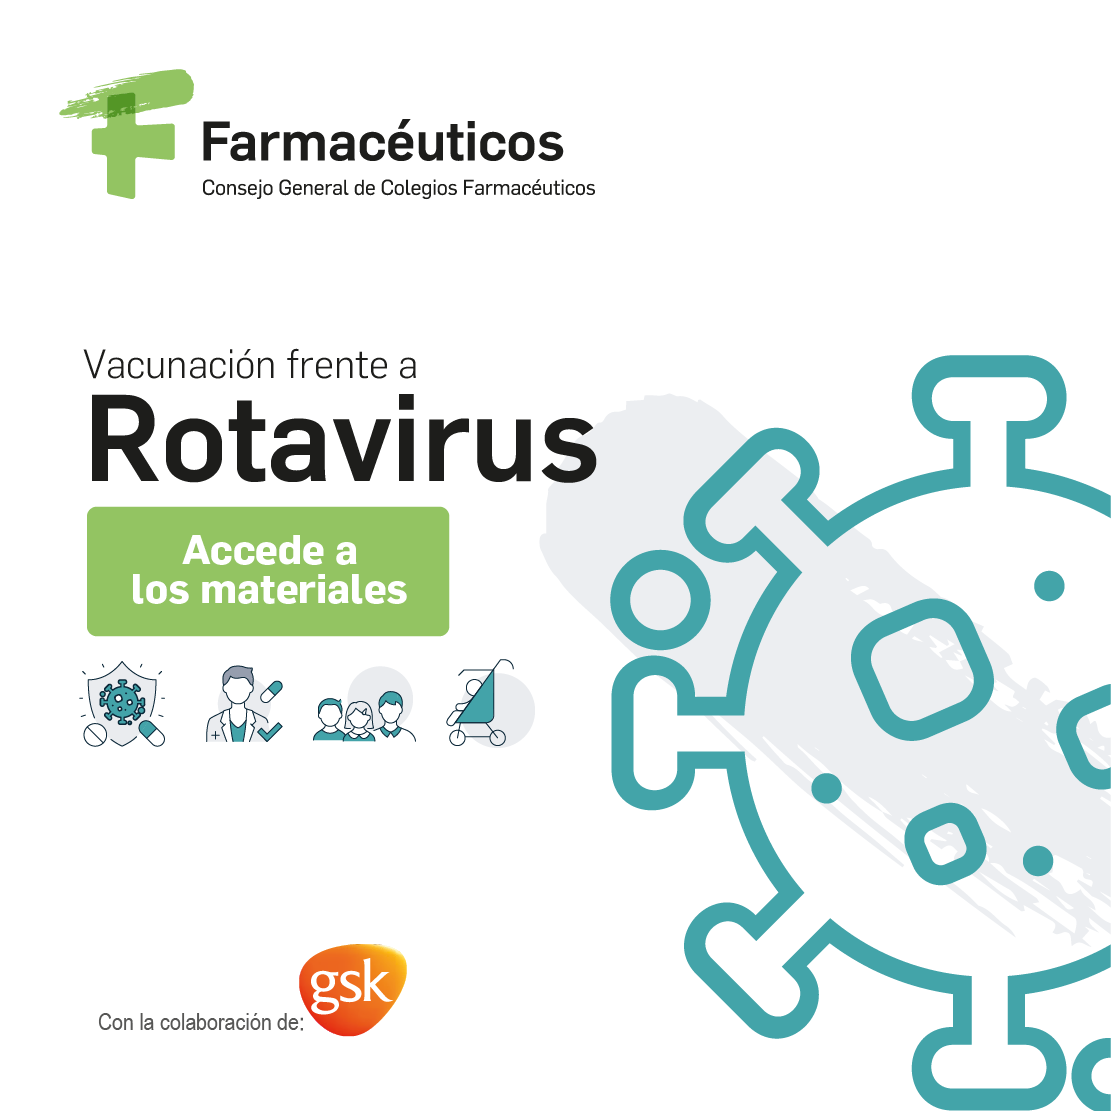 La gastroenteritis por rotavirus es la principal causa de ingreso hospitalario por diarrea aguda en España